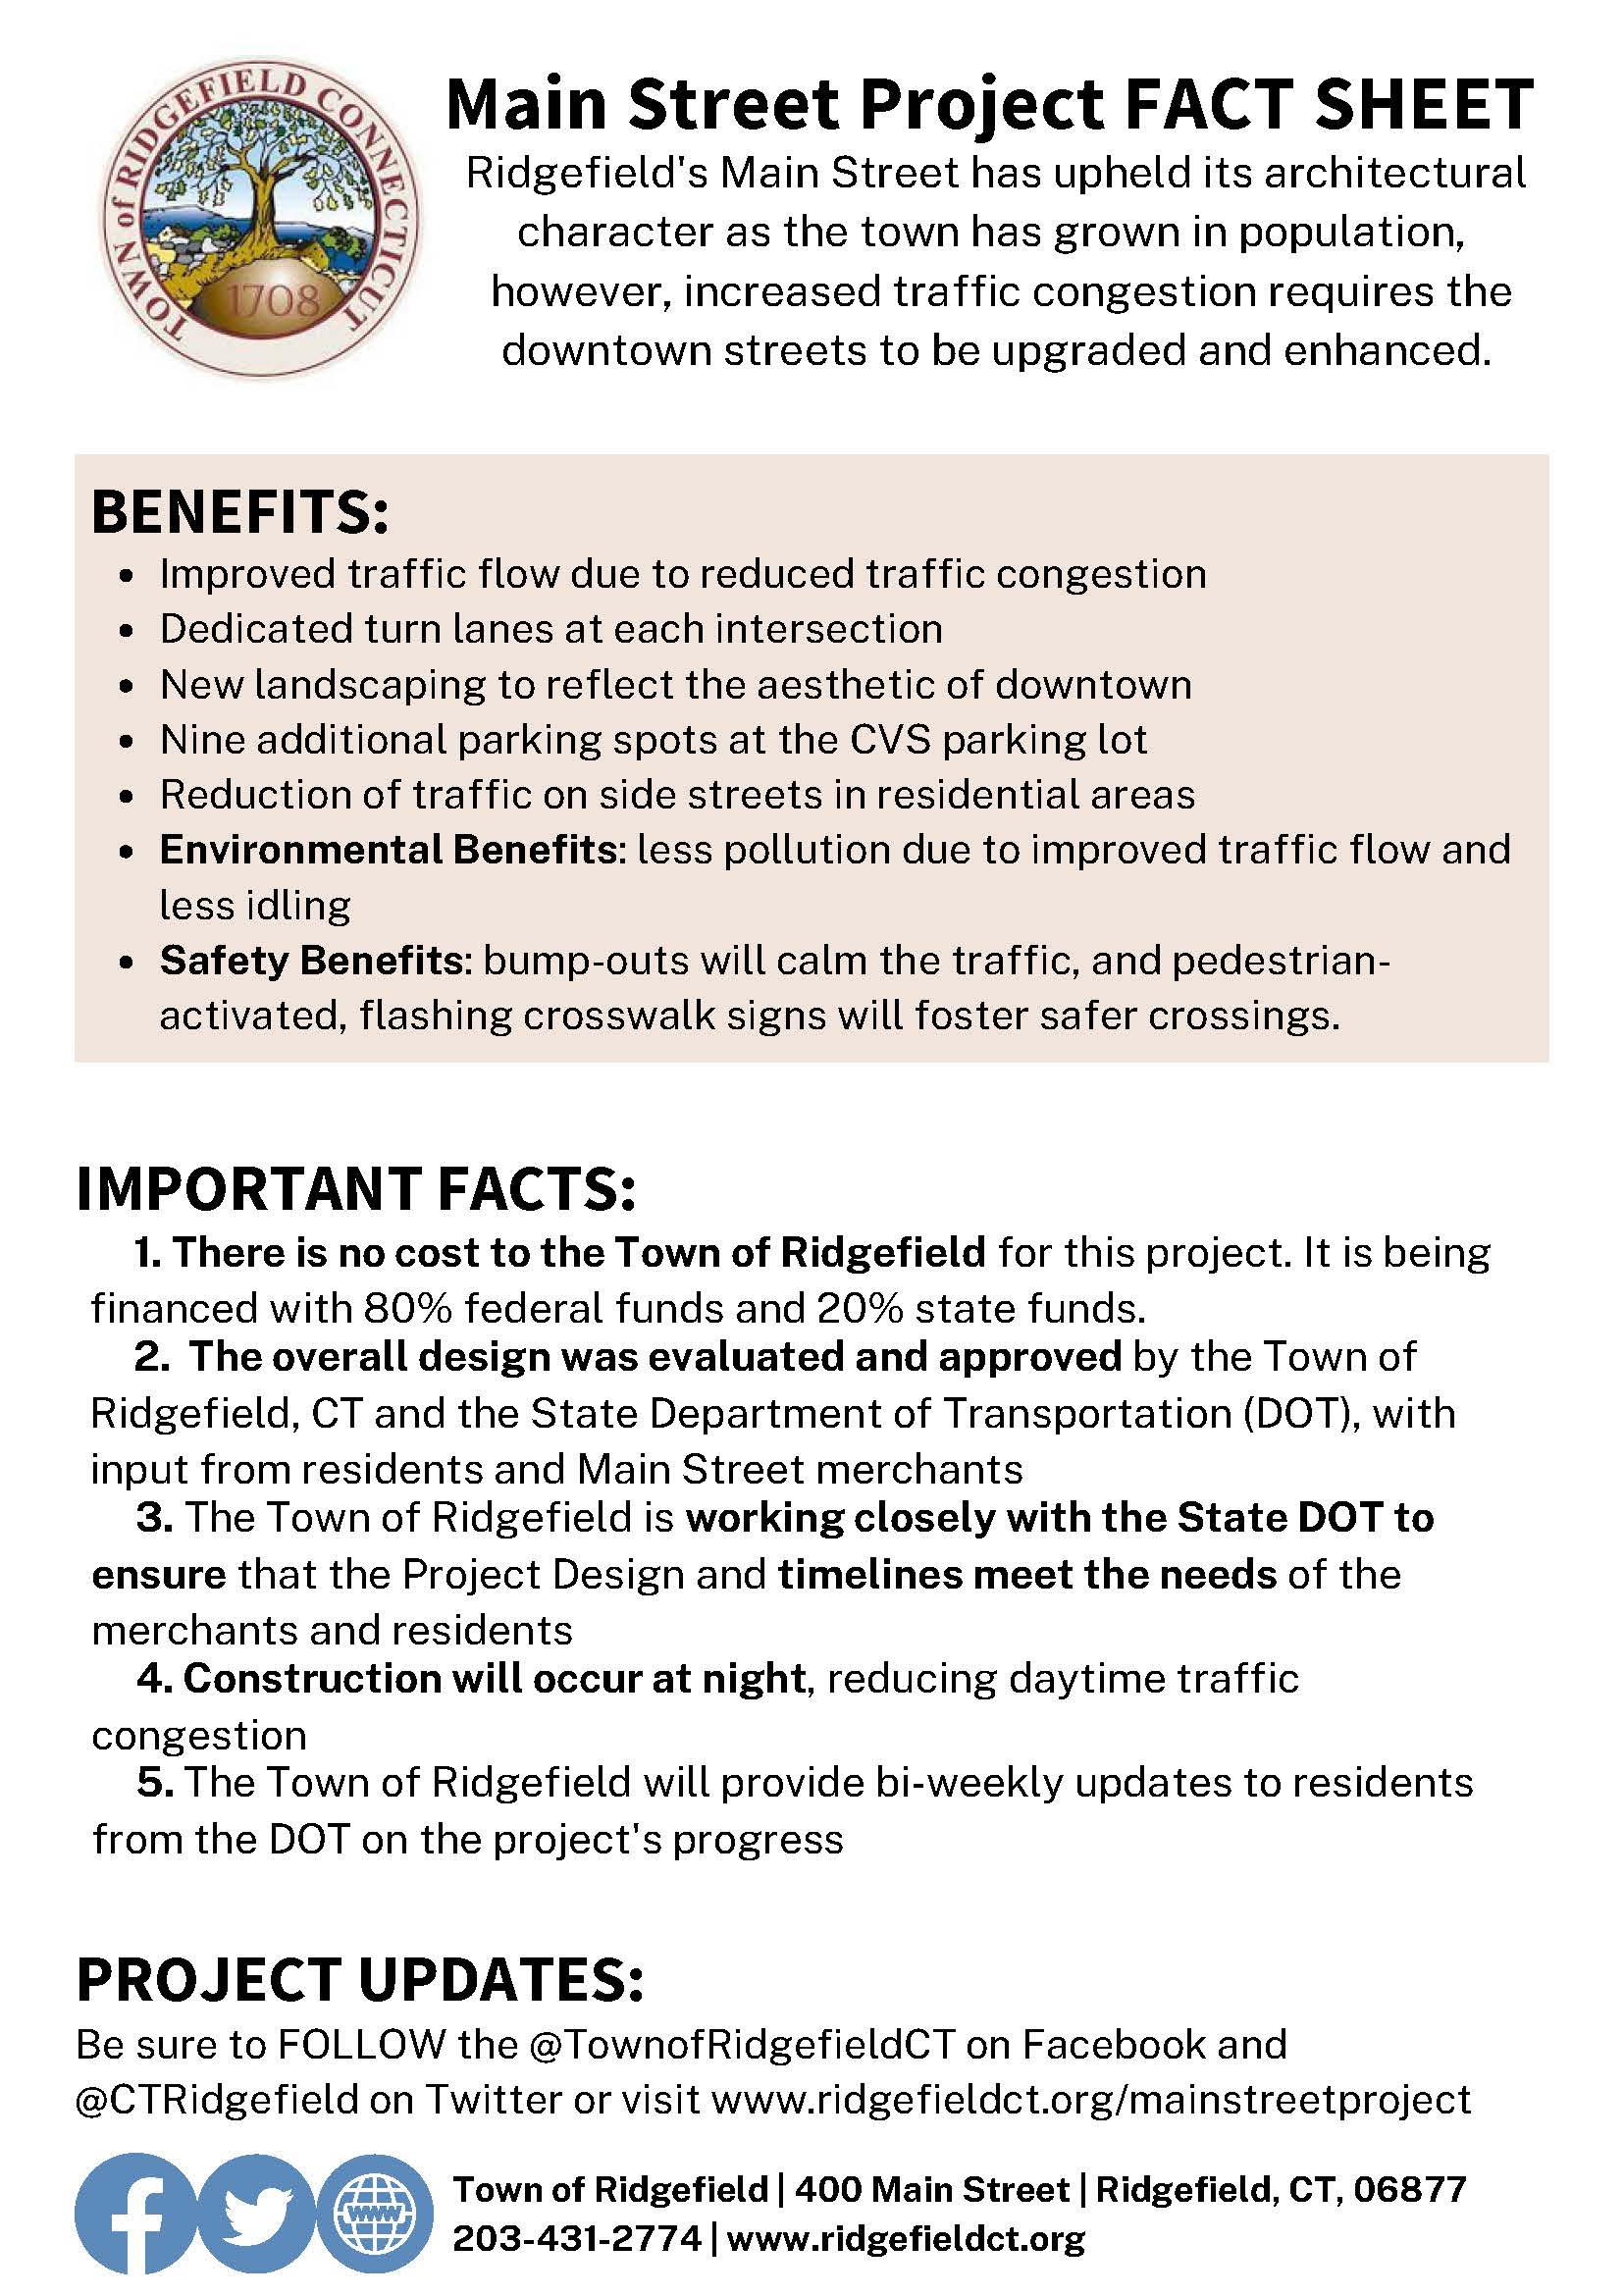 Main Street Project Fact Sheet